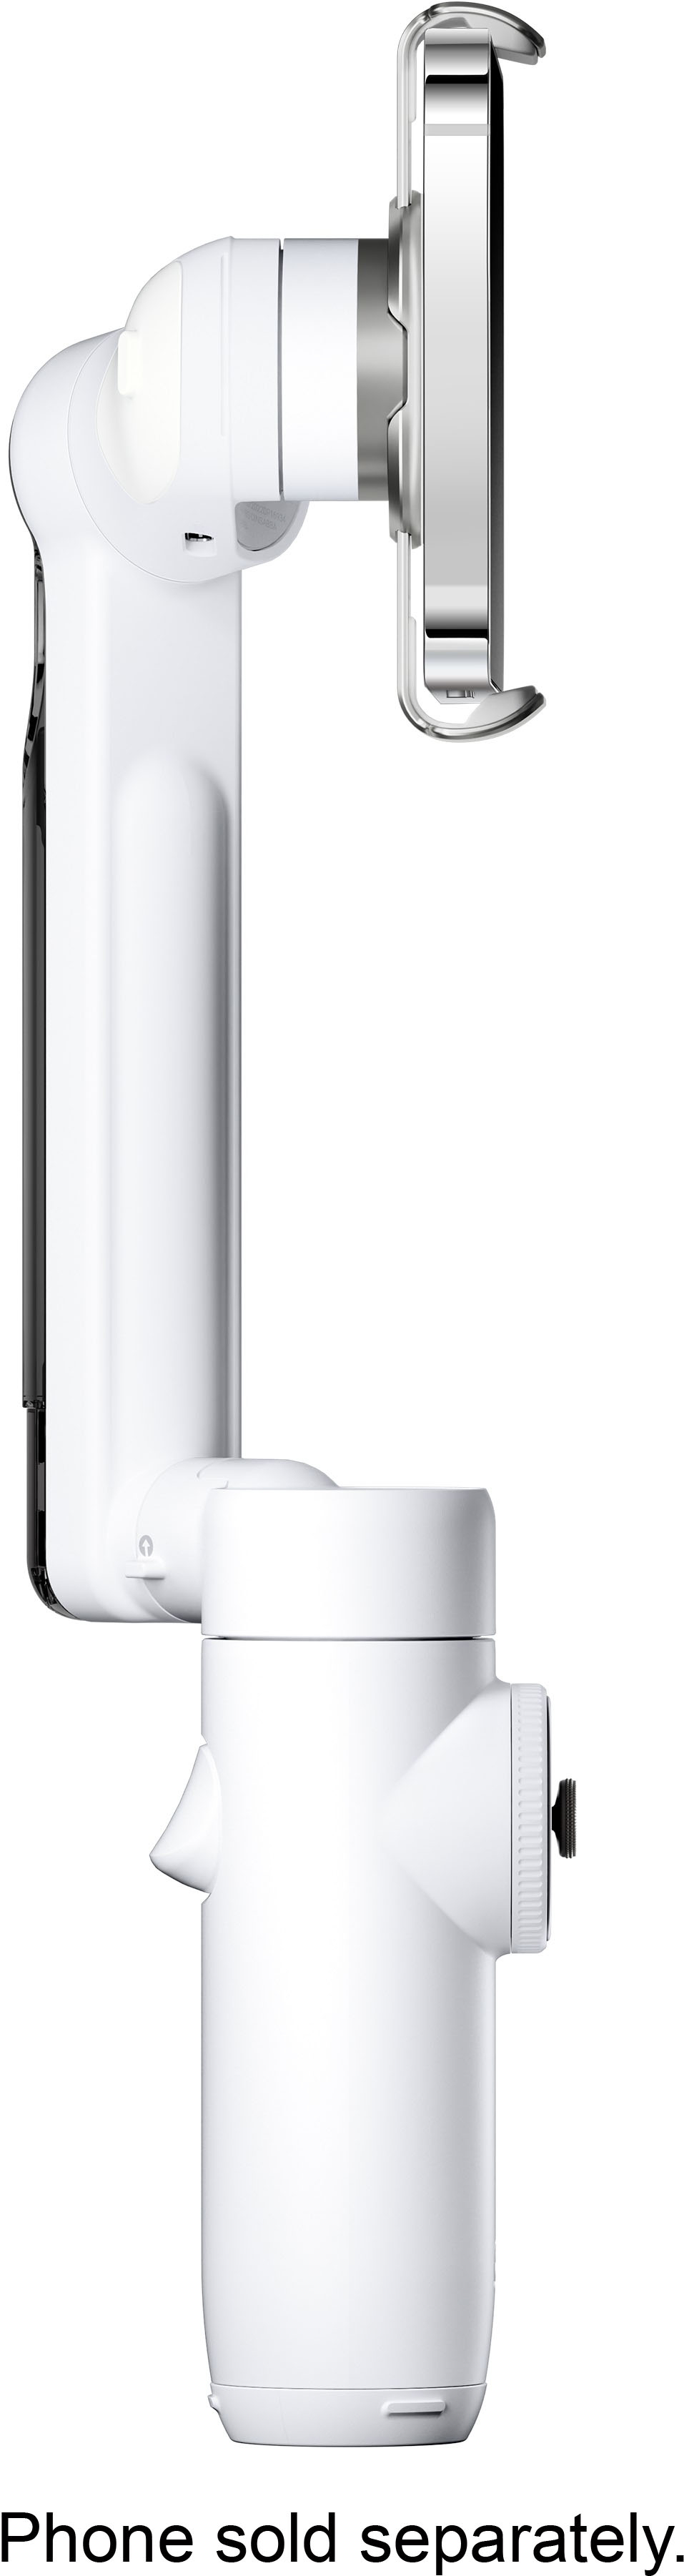 Insta360 Flow Creator Kit Axis Gimbal Stabilizer for Smartphones Gray Flow  05 - Best Buy